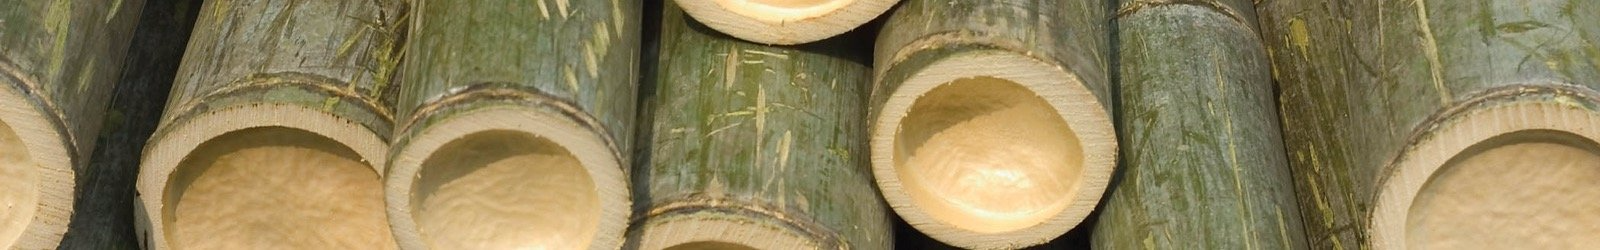 Tanya maria Bamboo Process